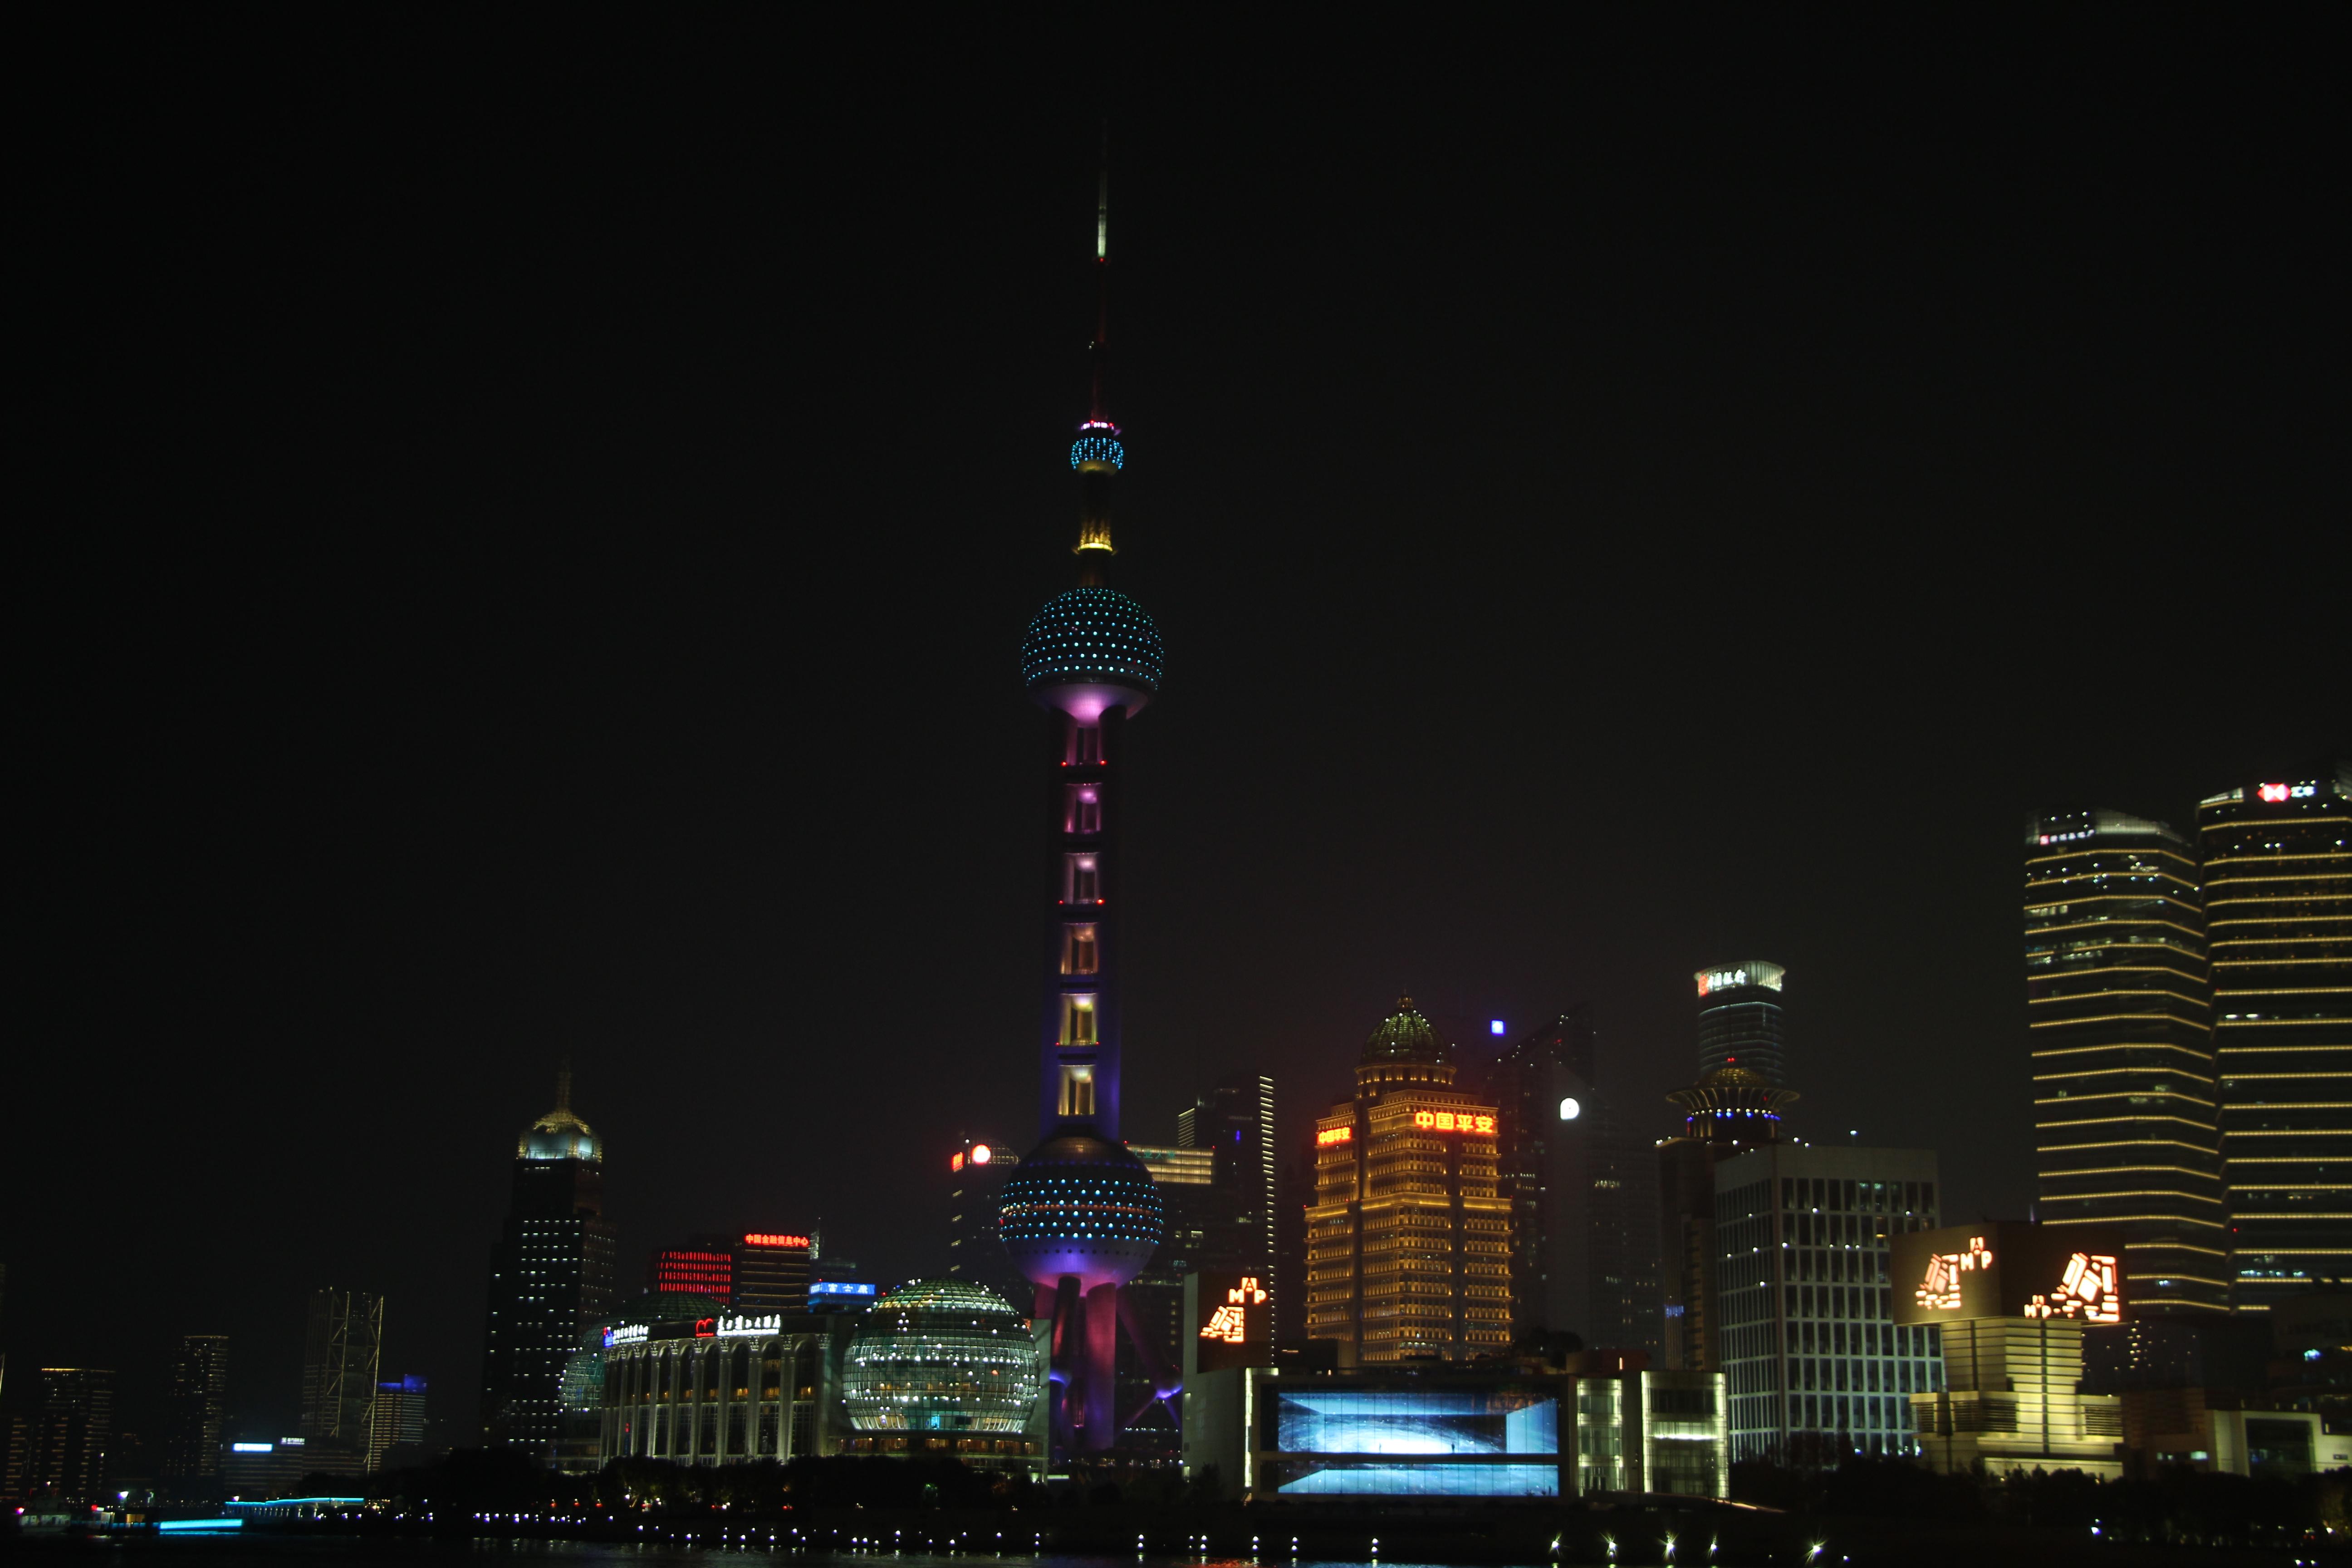 mech 的想法: 上海外滩夜景摄影分享 